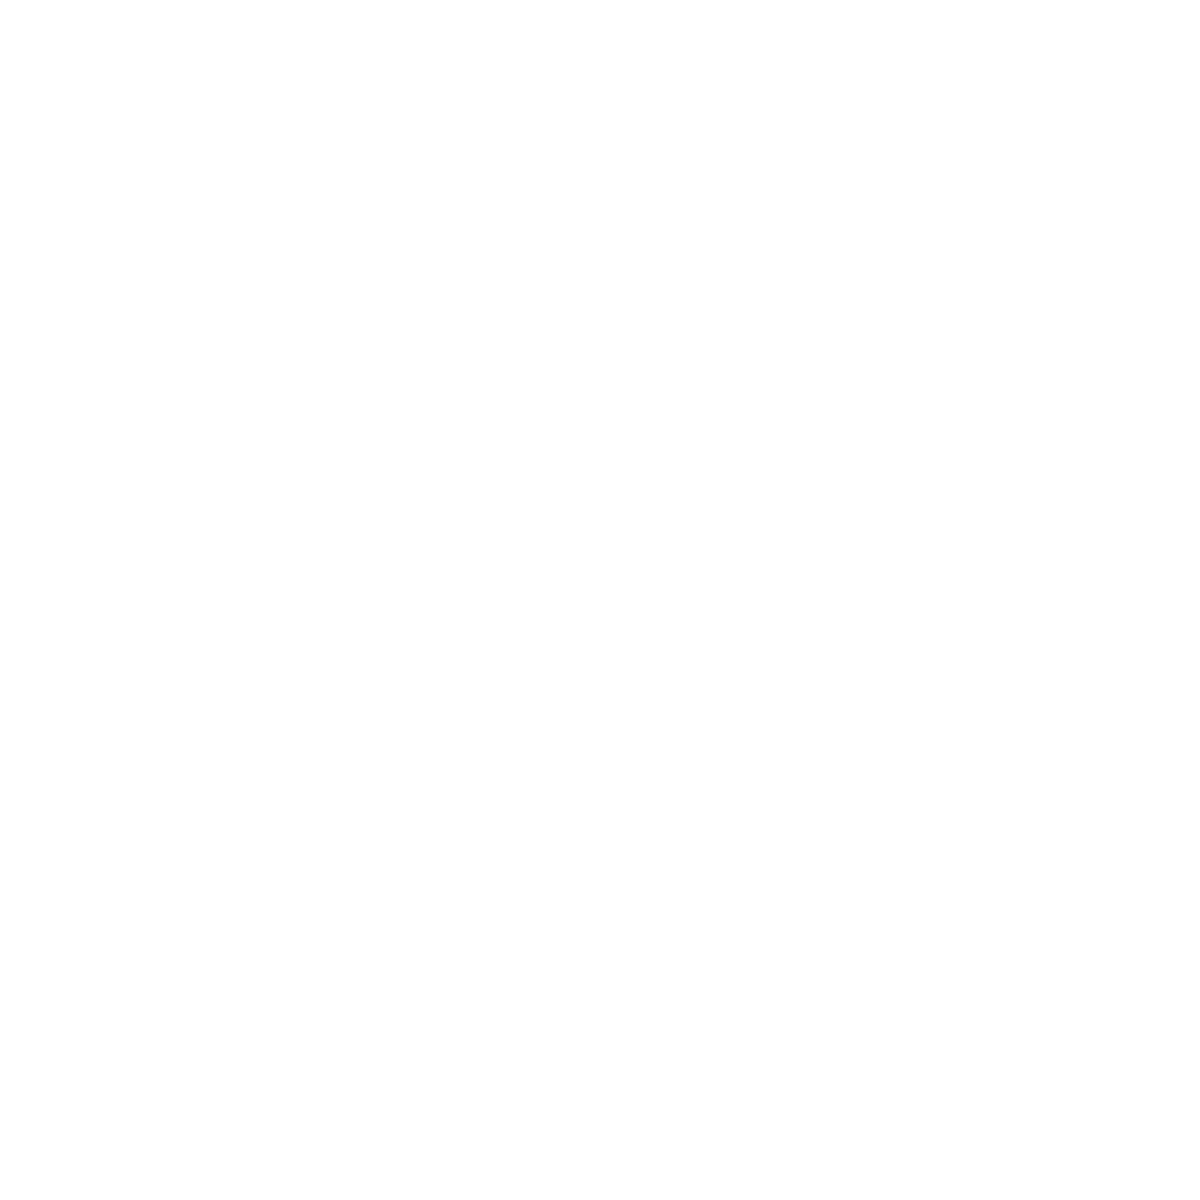 Johanna Rodas design & fabrics